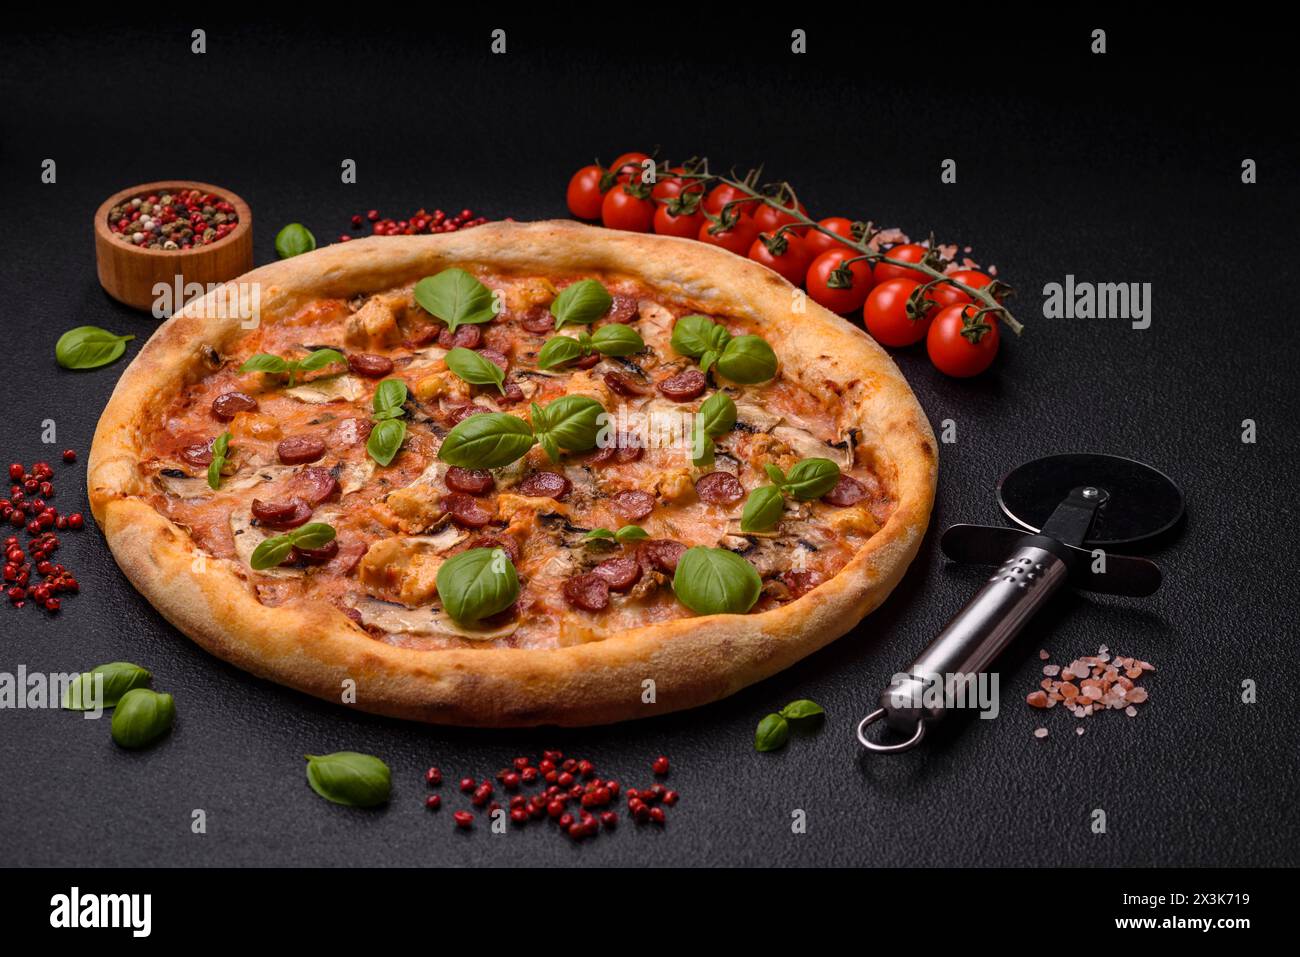 Délicieuse pizza avec saucisse, fromage, tomates, sel, épices et herbes sur un fond de béton foncé Banque D'Images